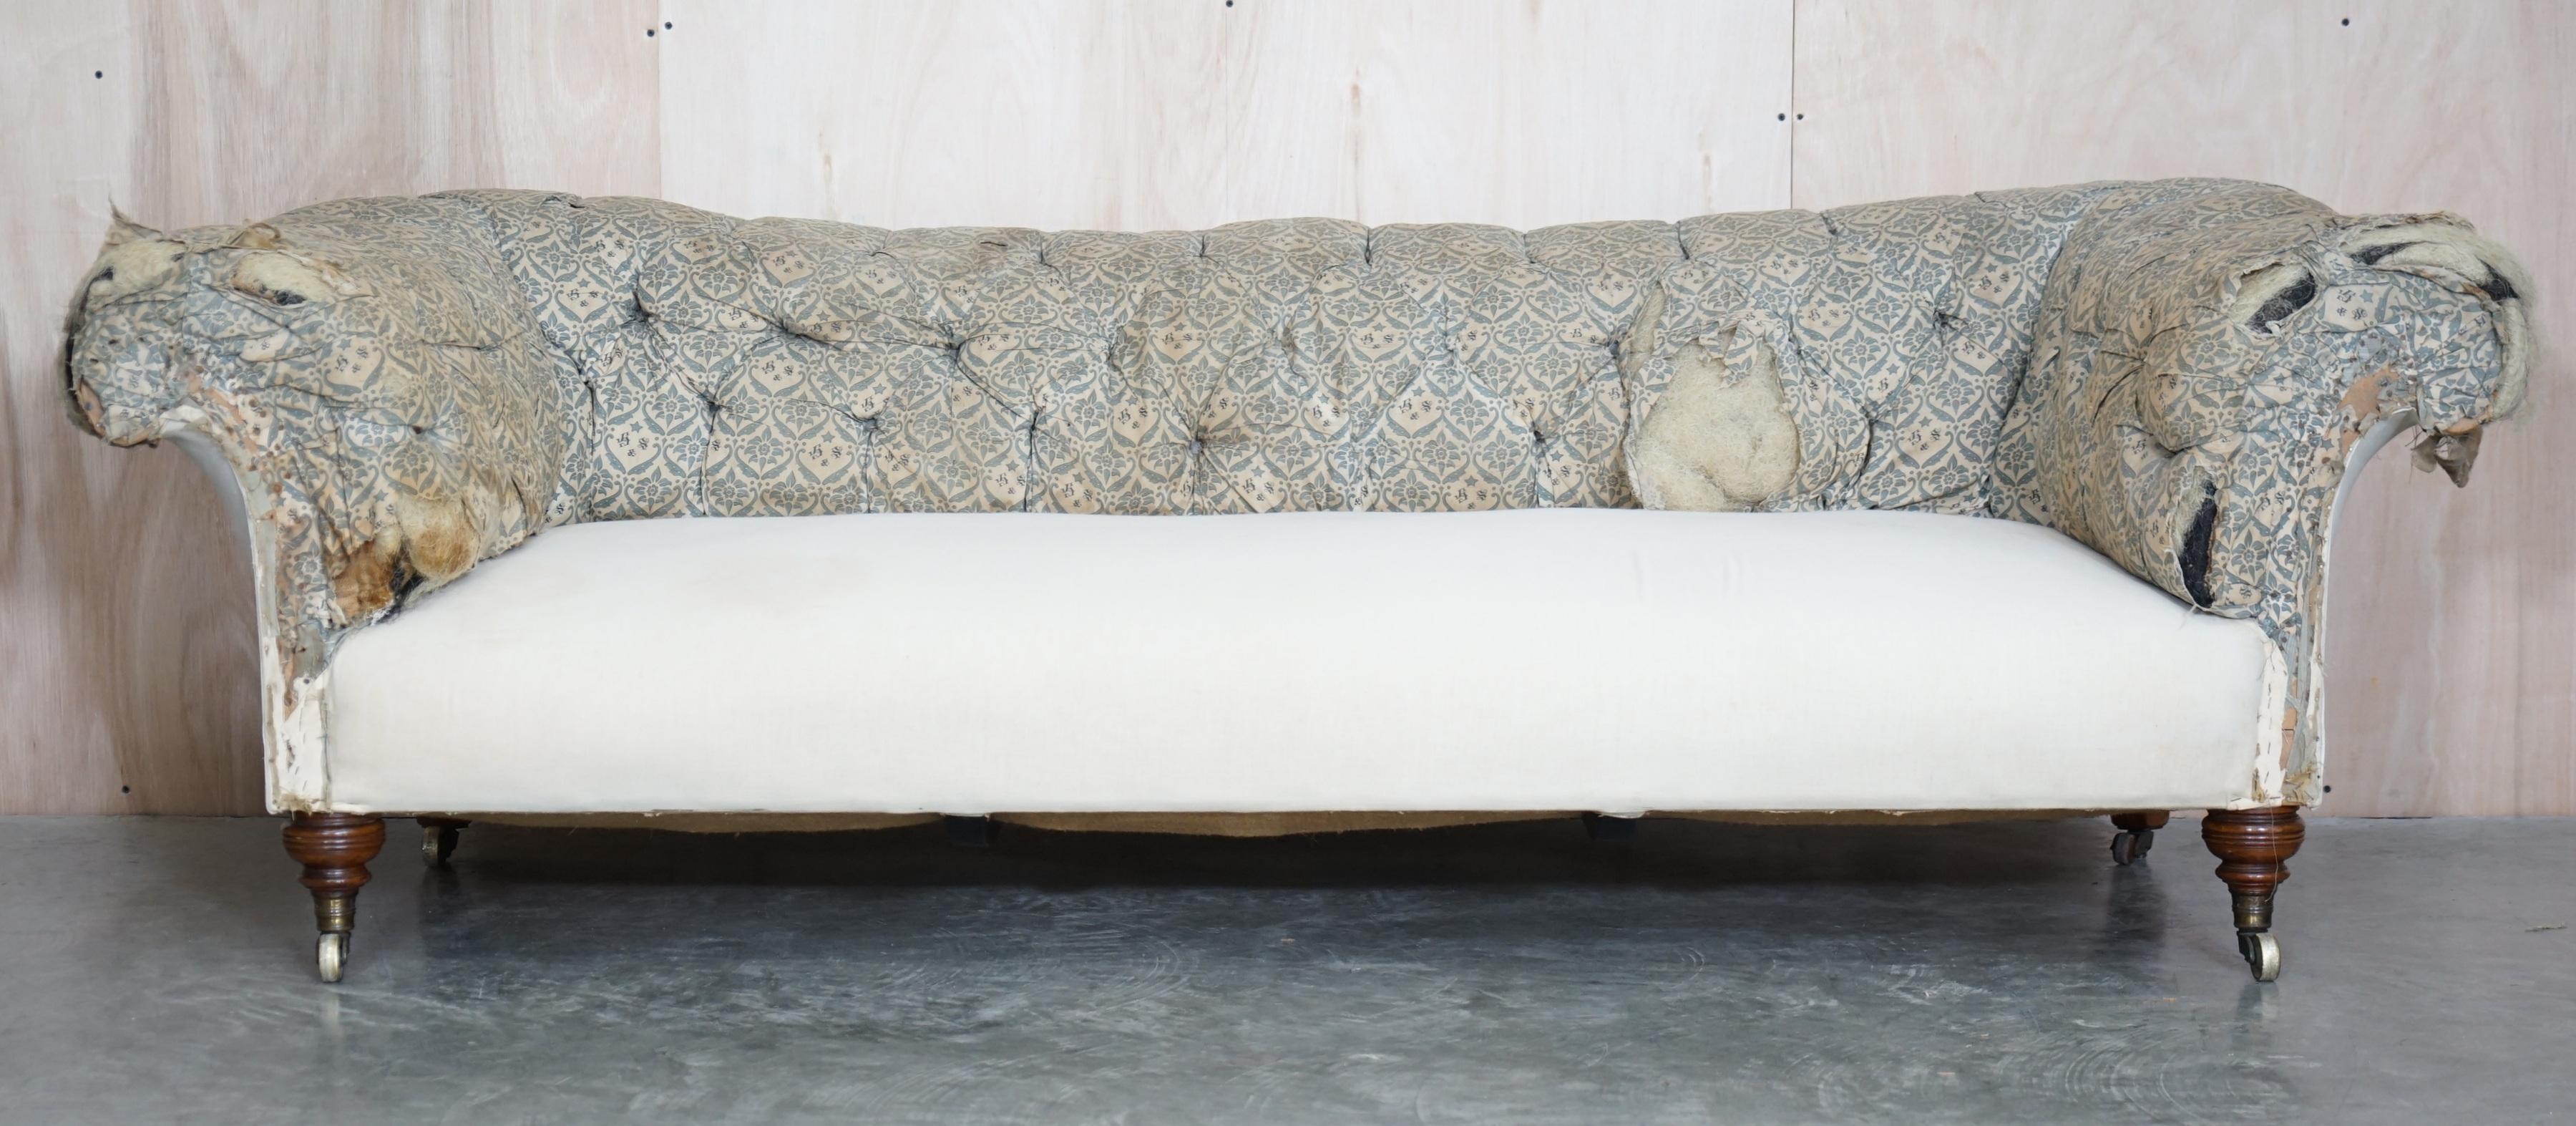 Wir freuen uns, ein sehr seltenes, originales viktorianisches Chesterfield-Sofa von Howard & Son aus der Zeit um 1860 mit dem originalen Inlettstoff und langen, eleganten, gedrechselten Beinen aus Nussbaumholz zum Verkauf anbieten zu können

Dies